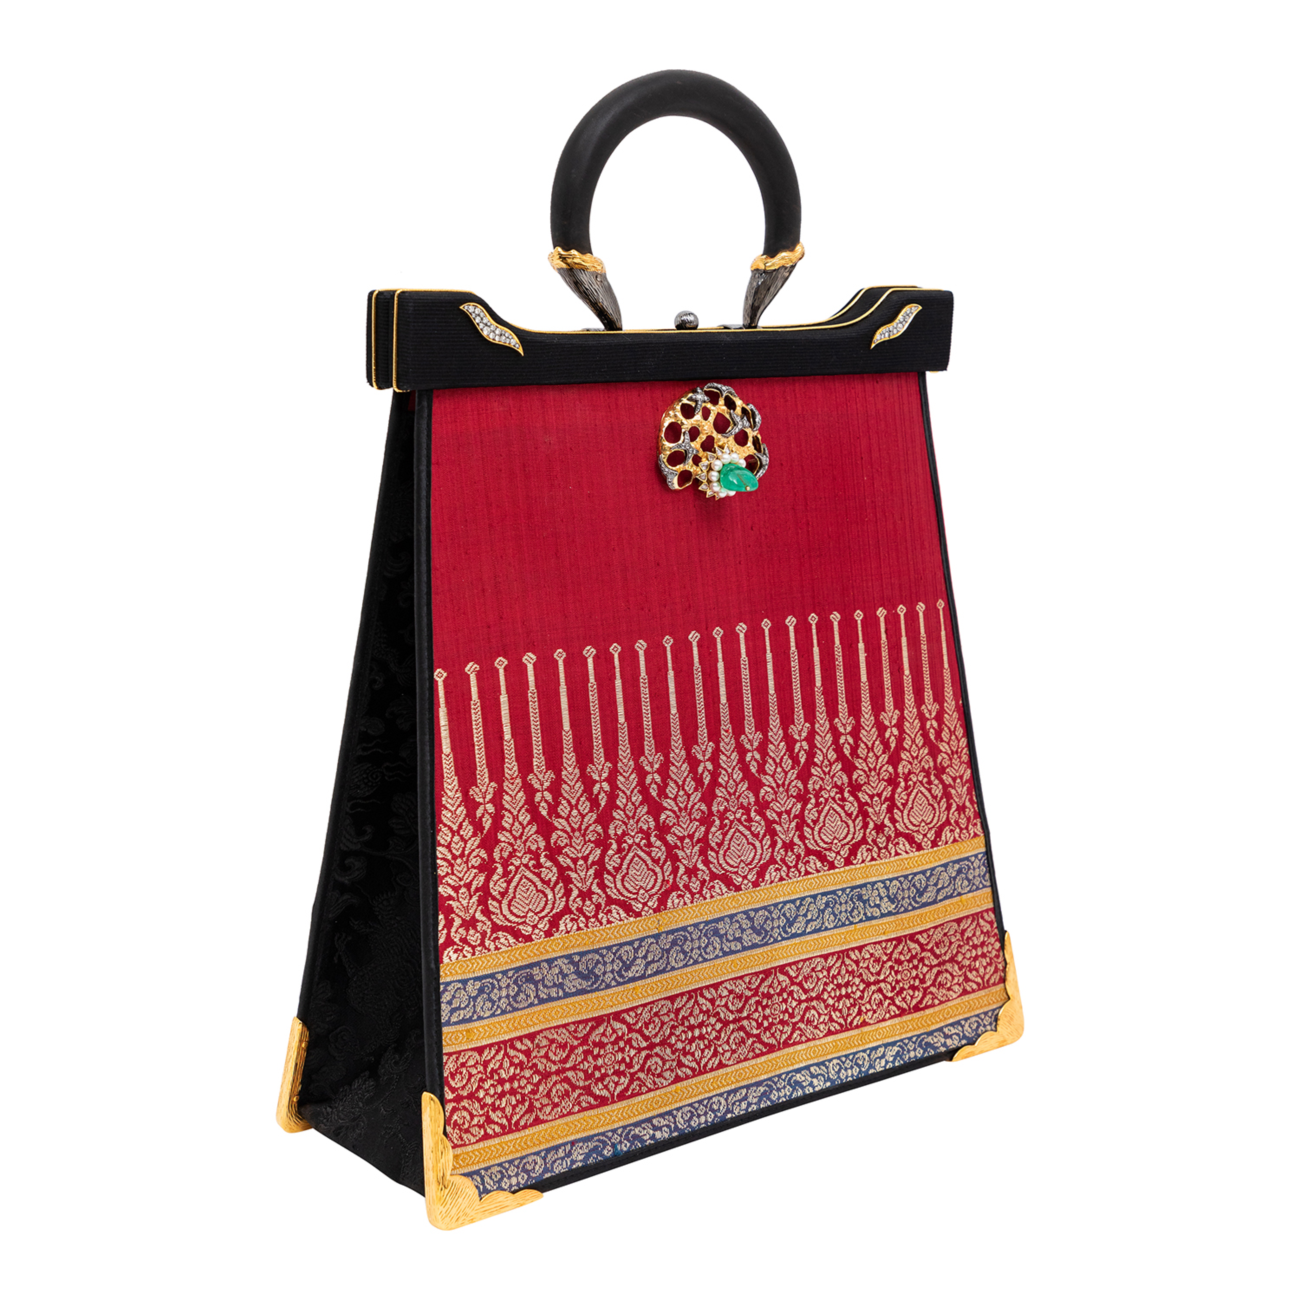 Silapacheep Textile Handbag with Lotus, Emerald and Diamond